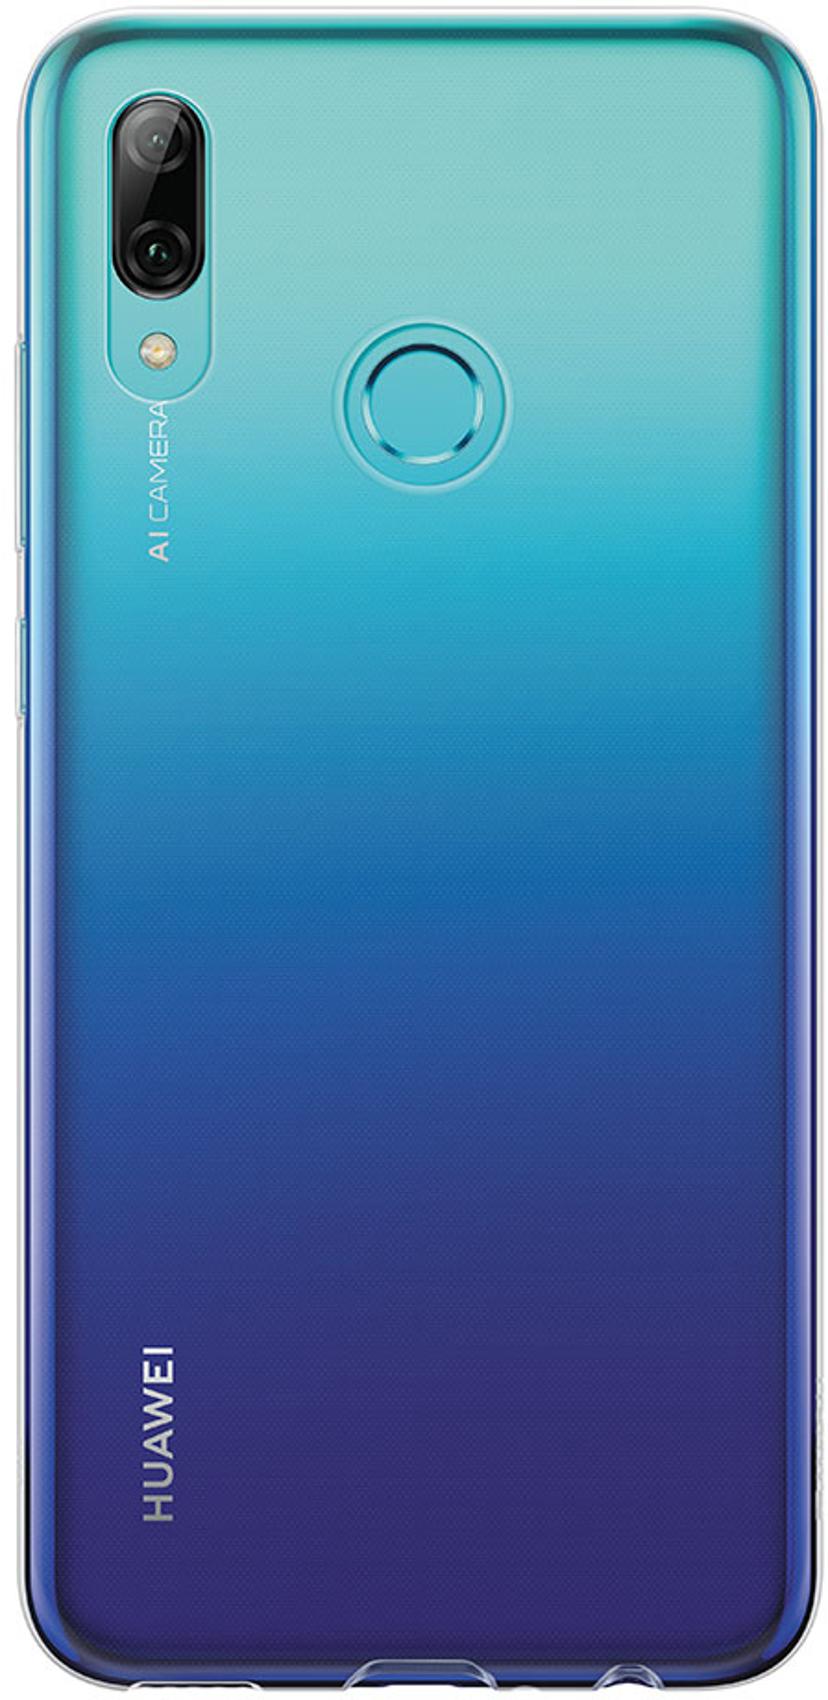 præambel Berri gennembore Huawei Bagomslag til mobiltelefon Huawei P Smart (2019) Gennemsigtig  (51992894) | Dustinhome.dk